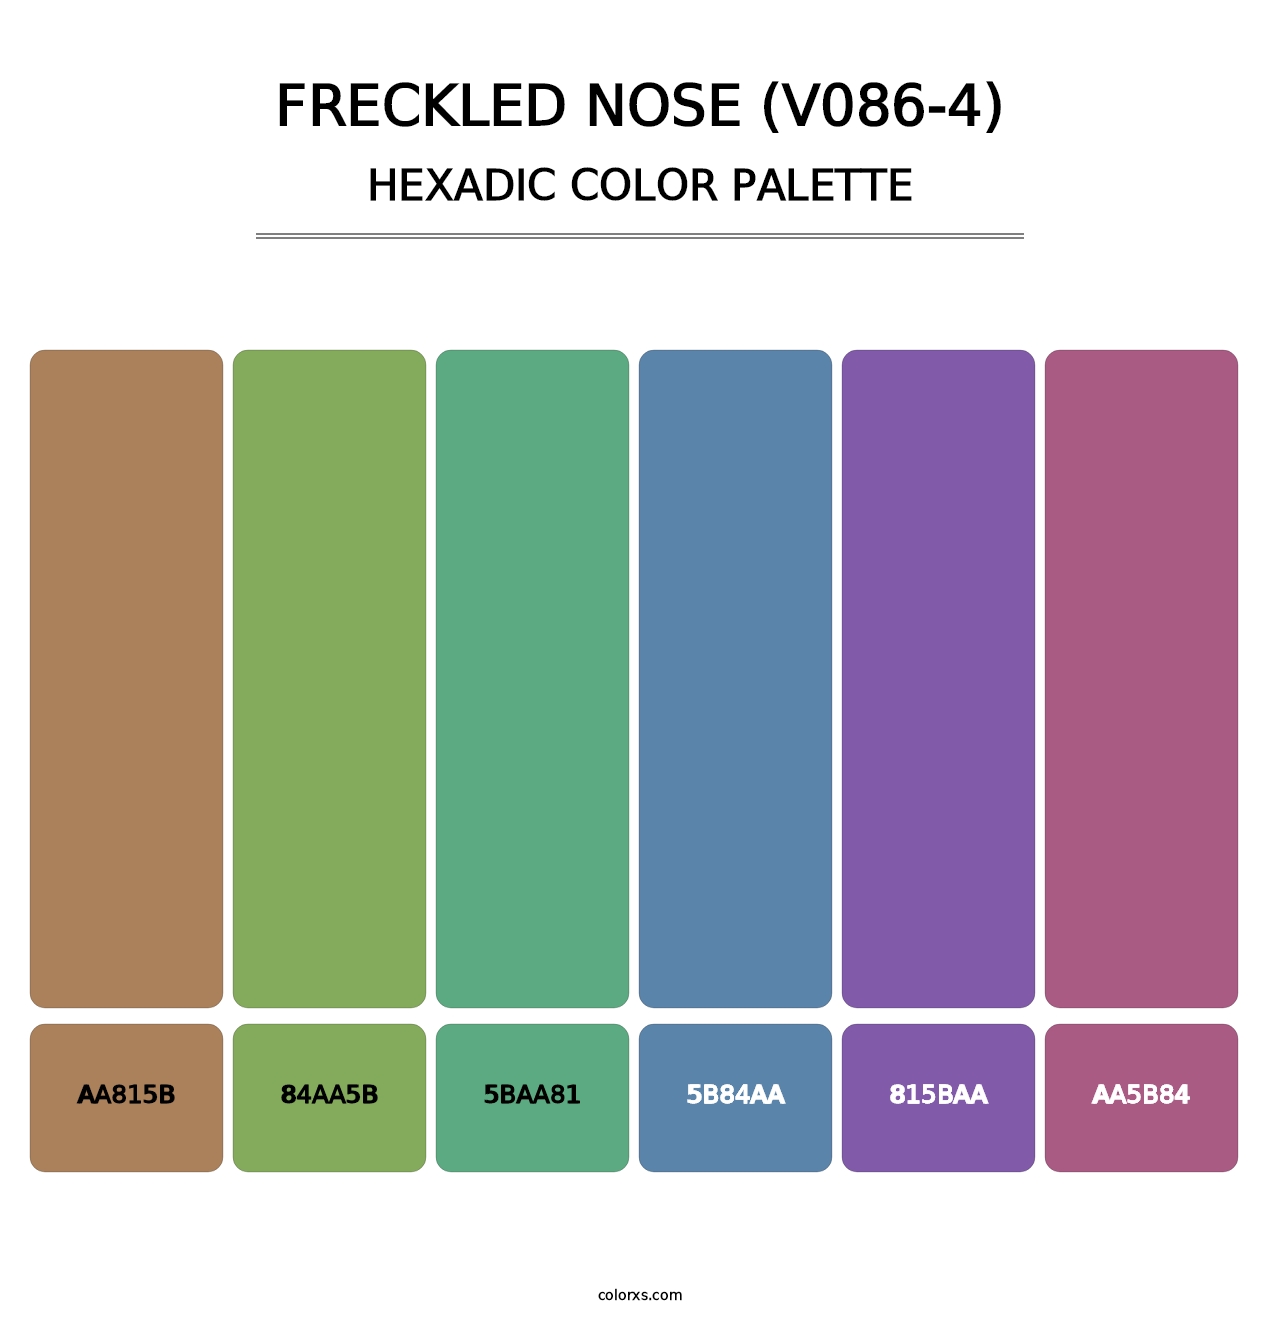 Freckled Nose (V086-4) - Hexadic Color Palette